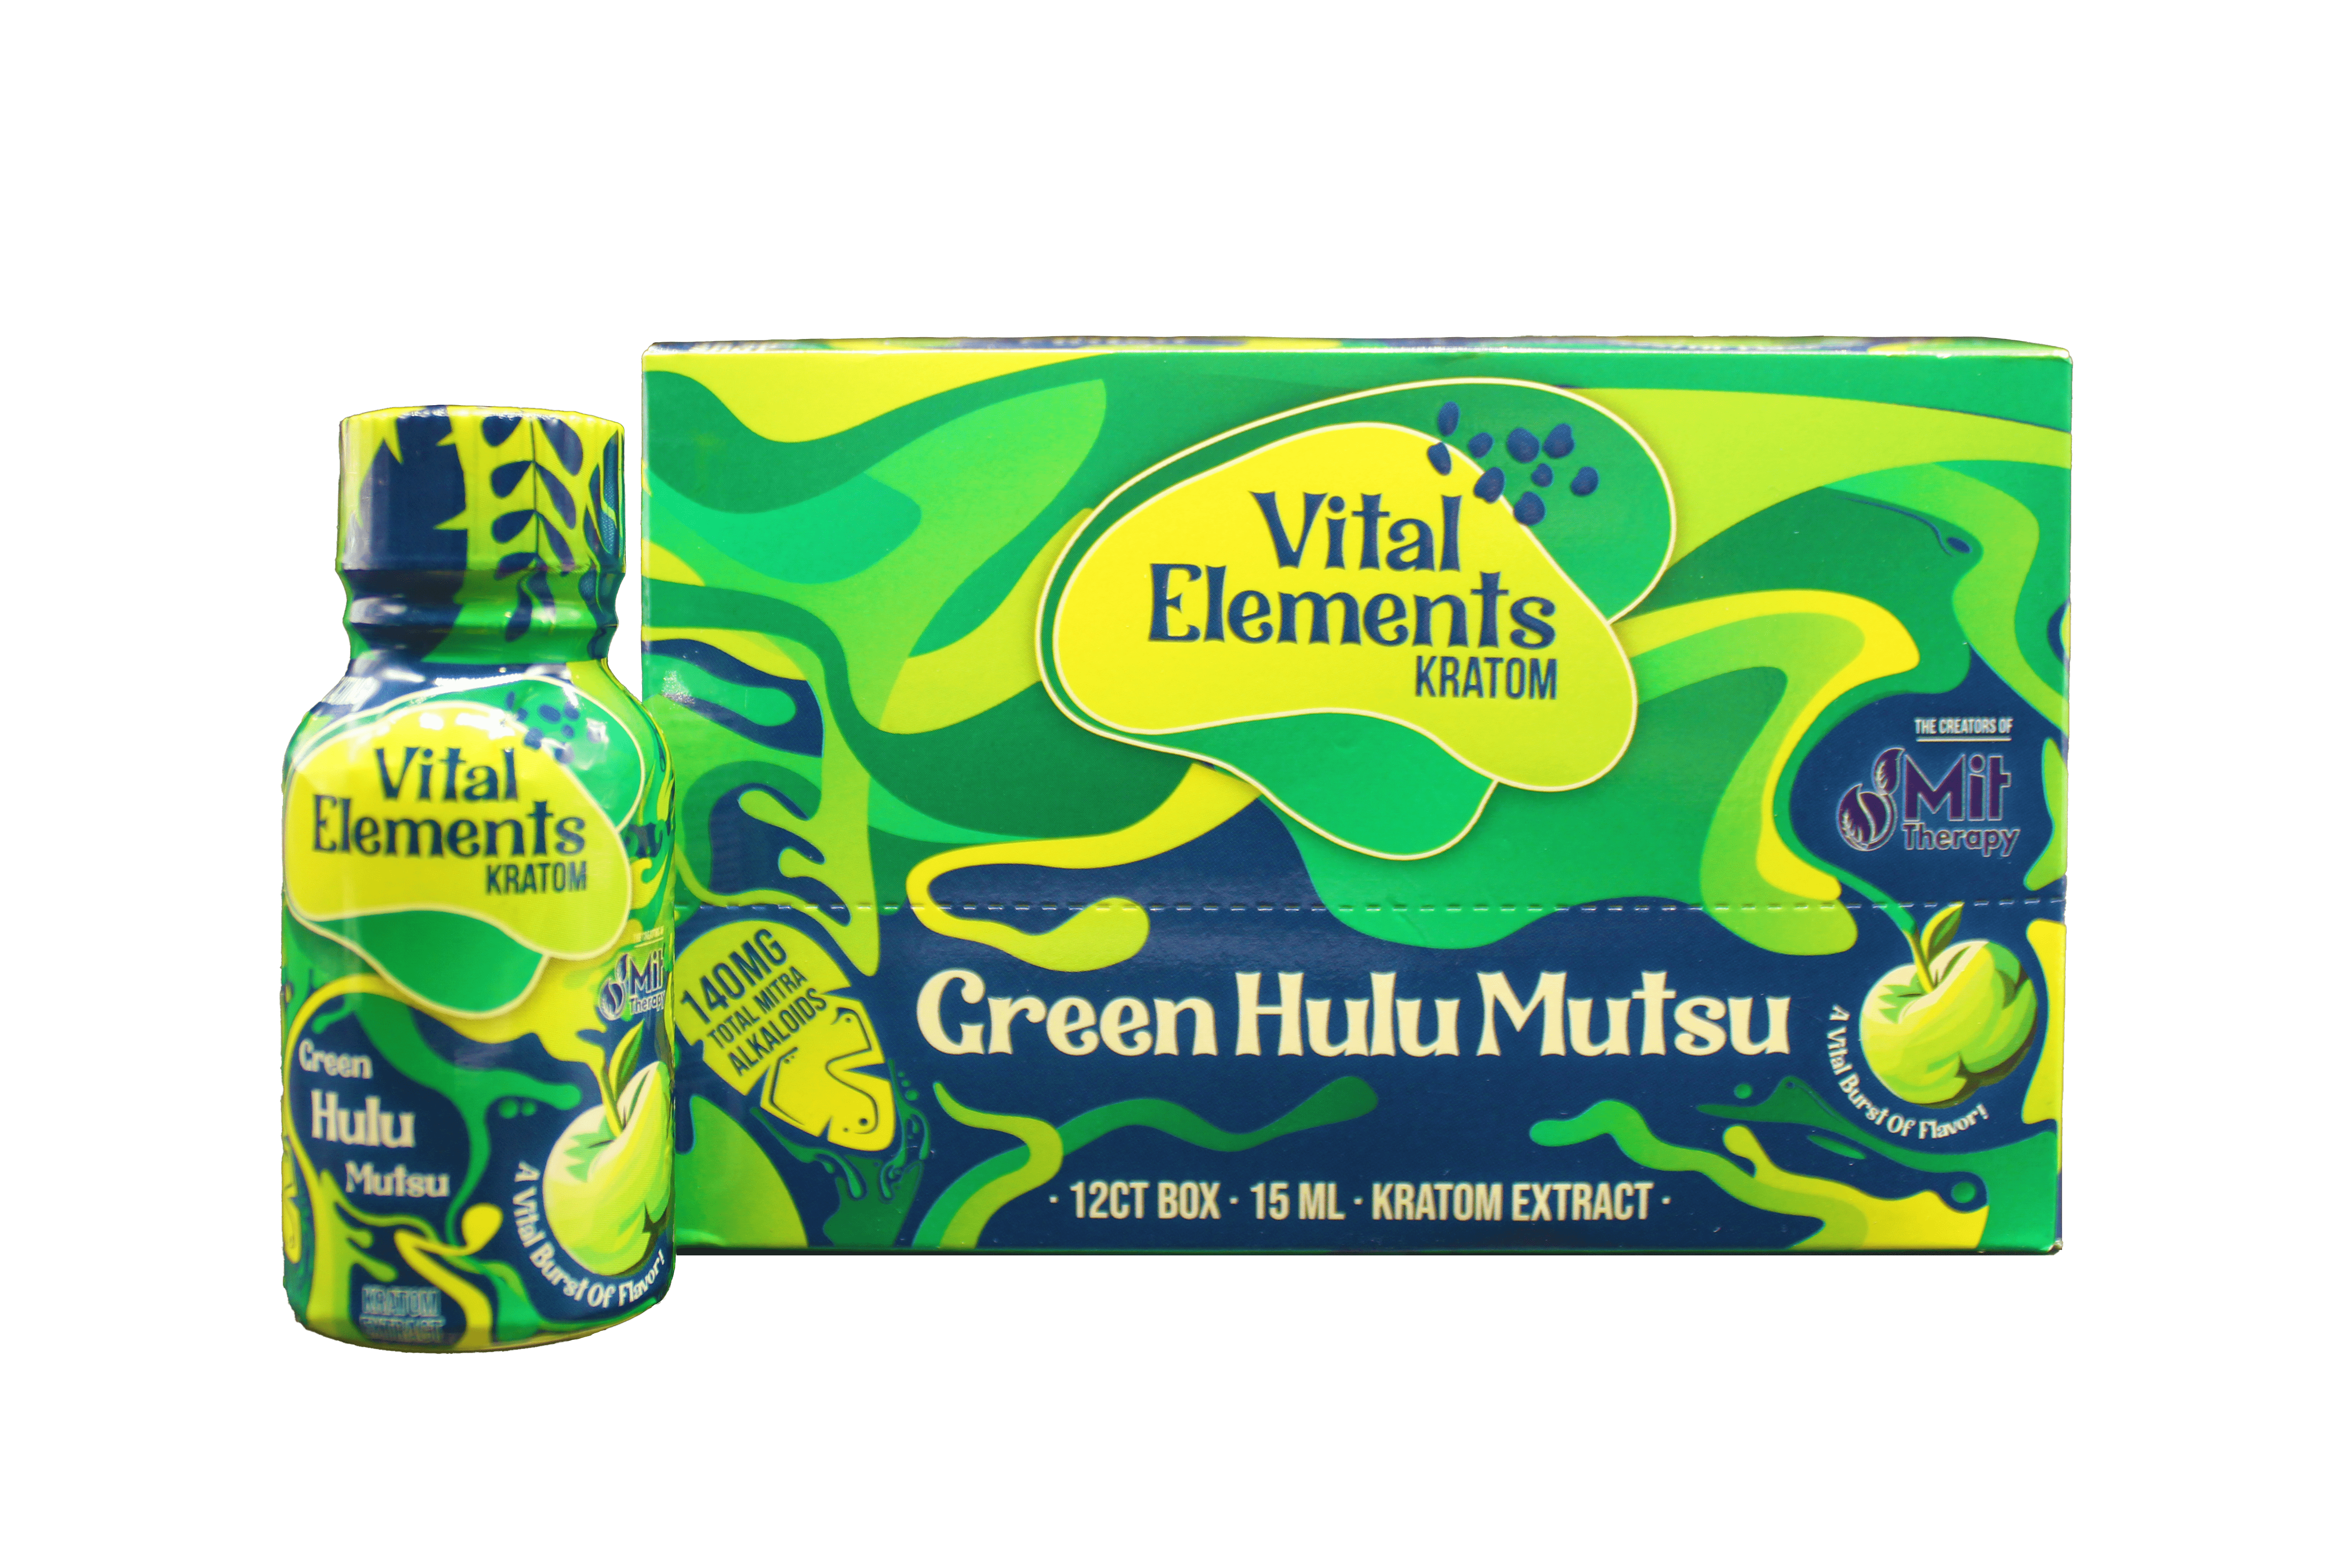 *Vital Elements Extract Shot Green Hulu Mutsu*